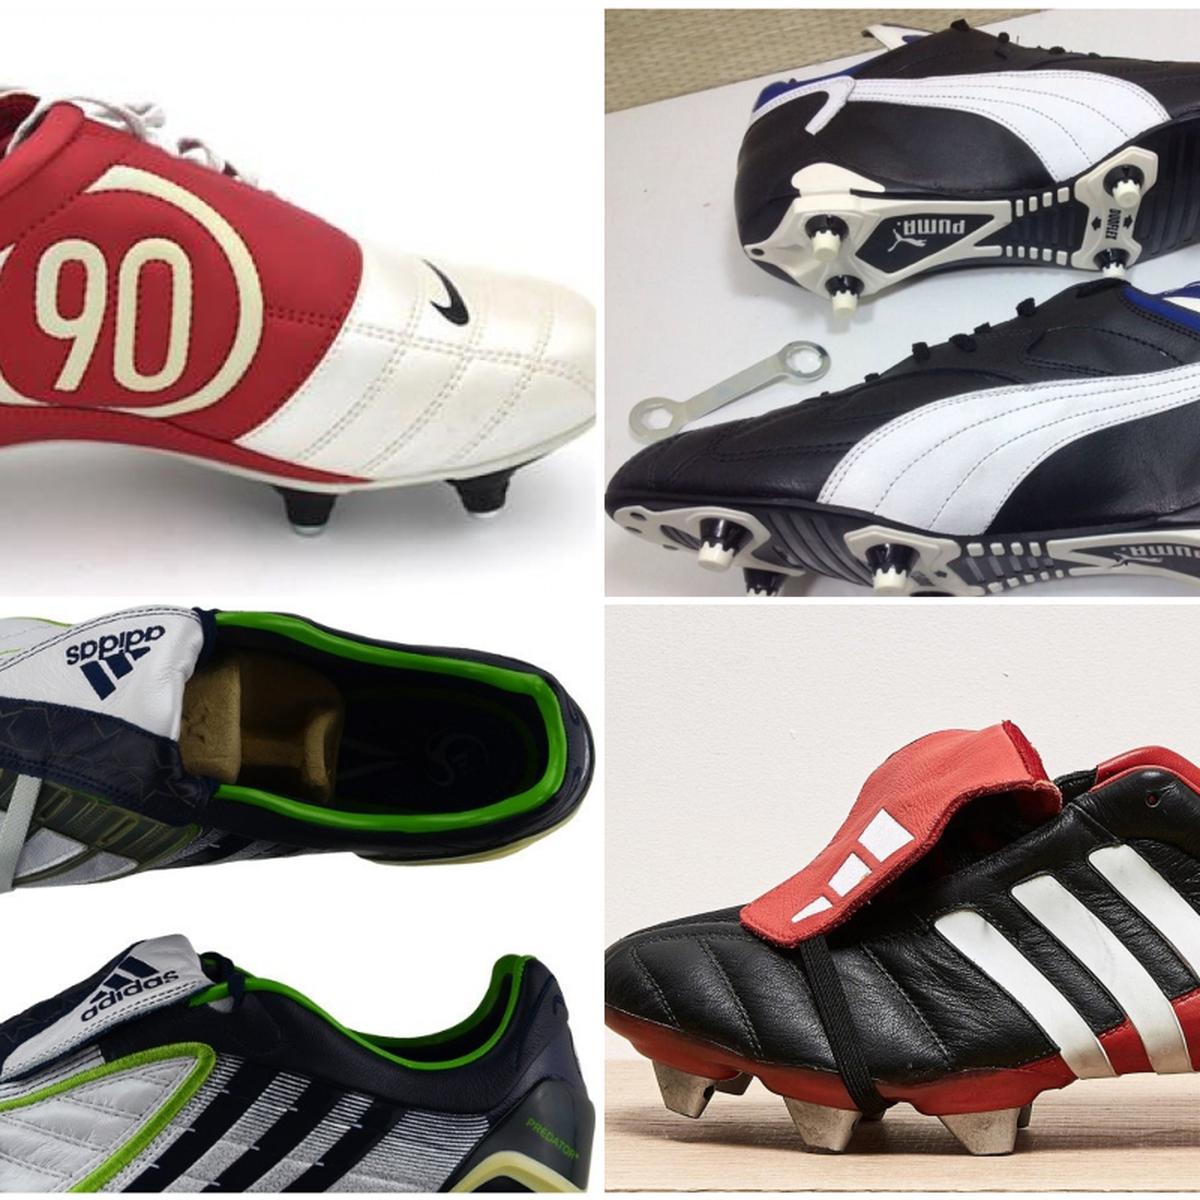 Chimpunes clásicos de fútbol: Nike, adidas, Pumas y todas las botas que en infancia soñamos con tener | FOTOS | FUTBOL-INTERNACIONAL |